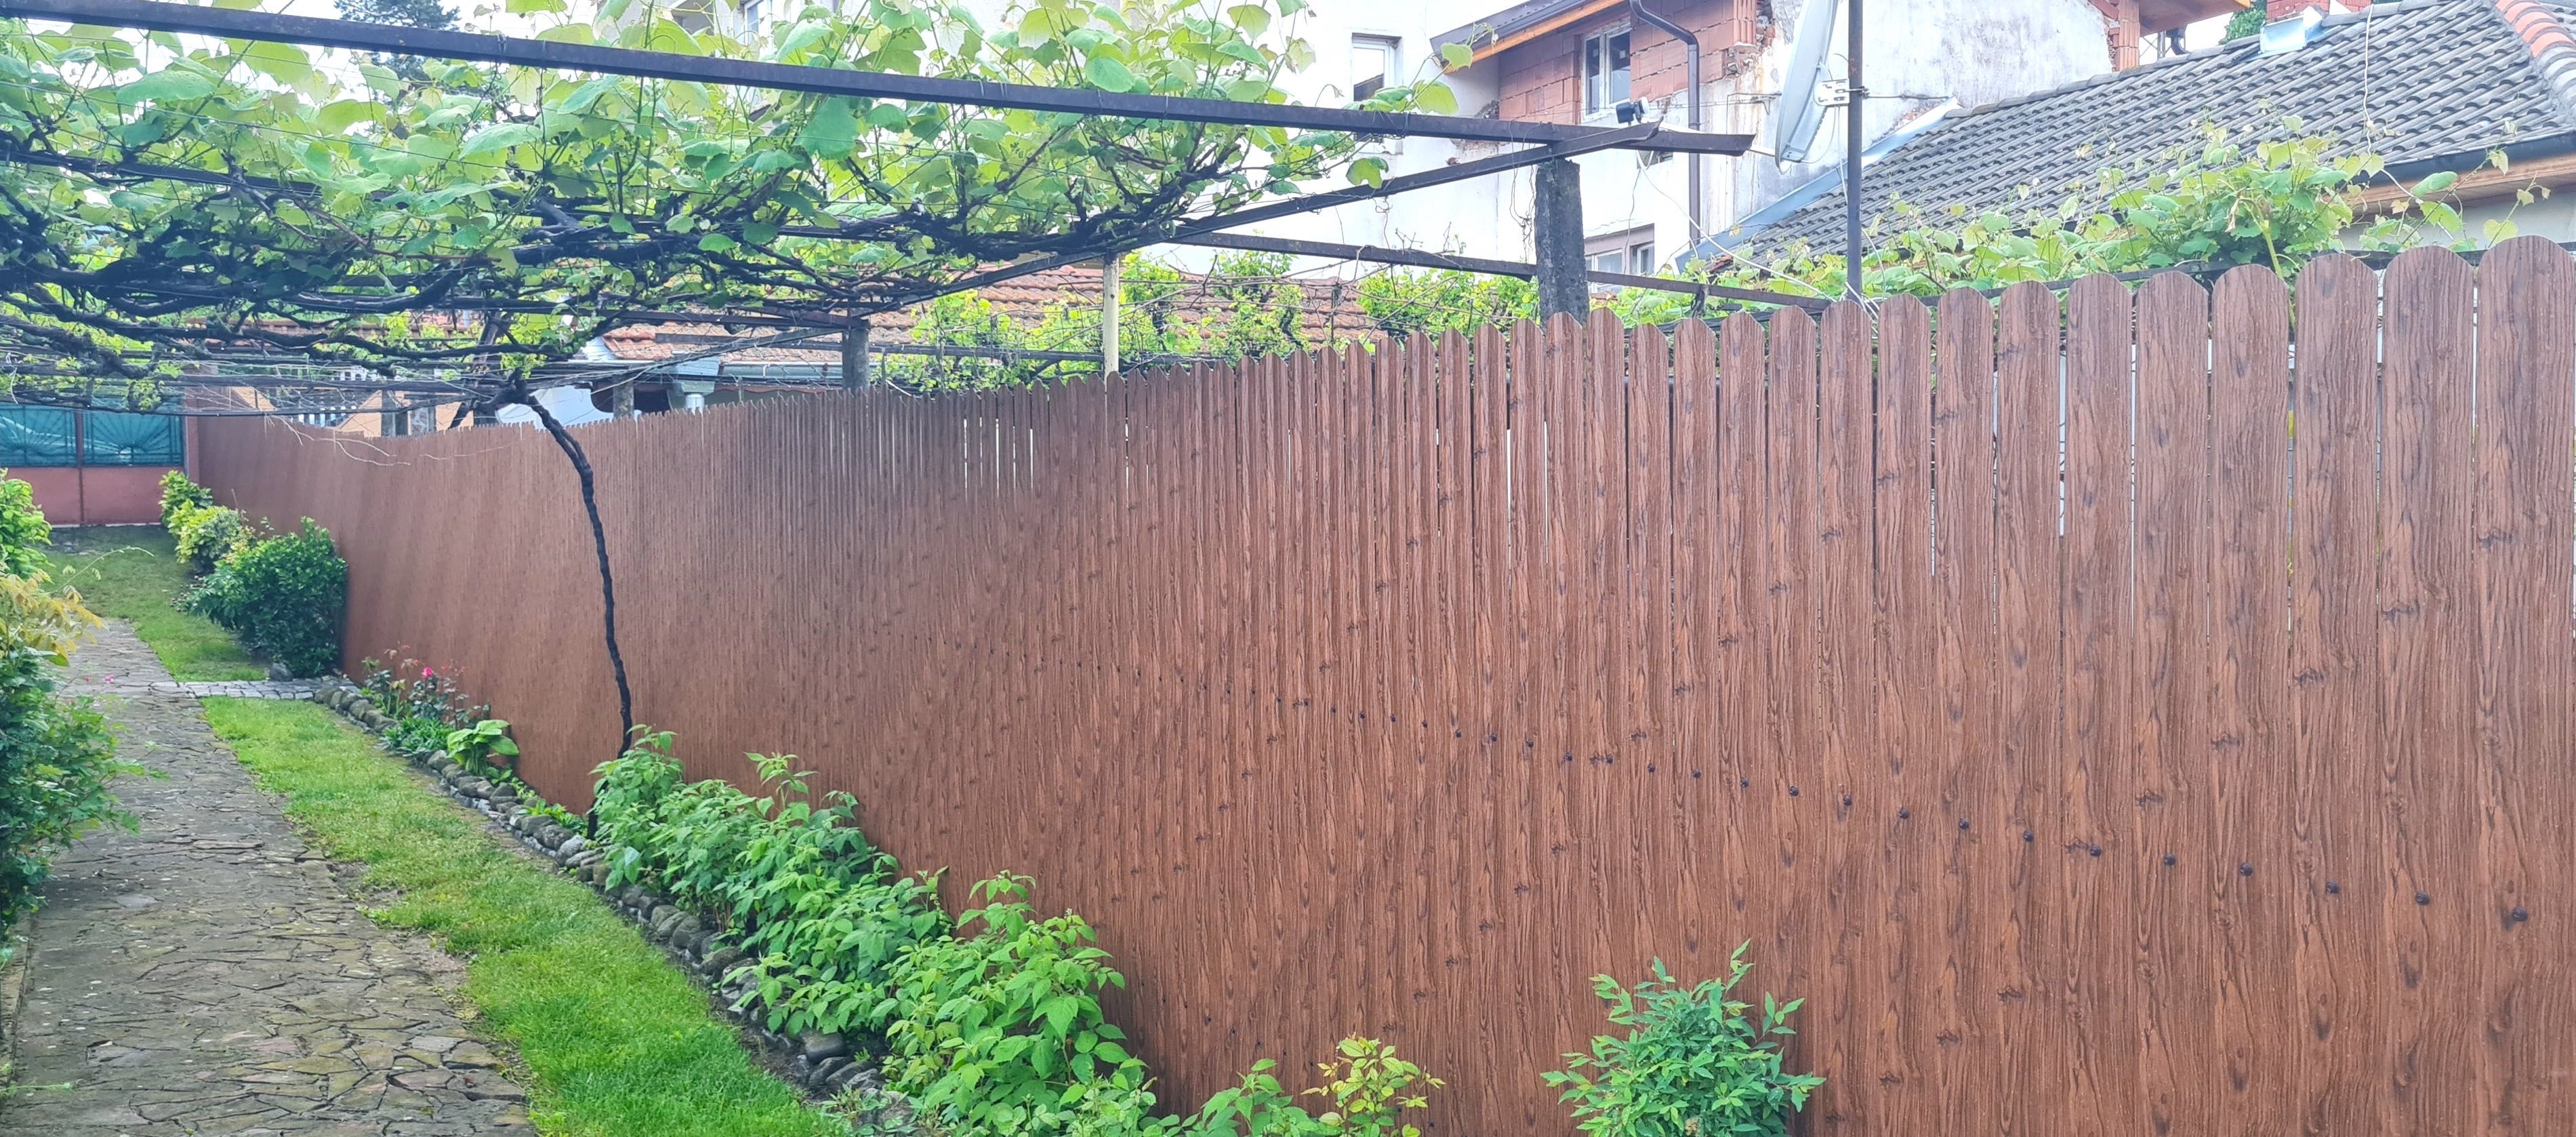 Метална ограда с декоративни профили - Оградки Бг промо 10% май